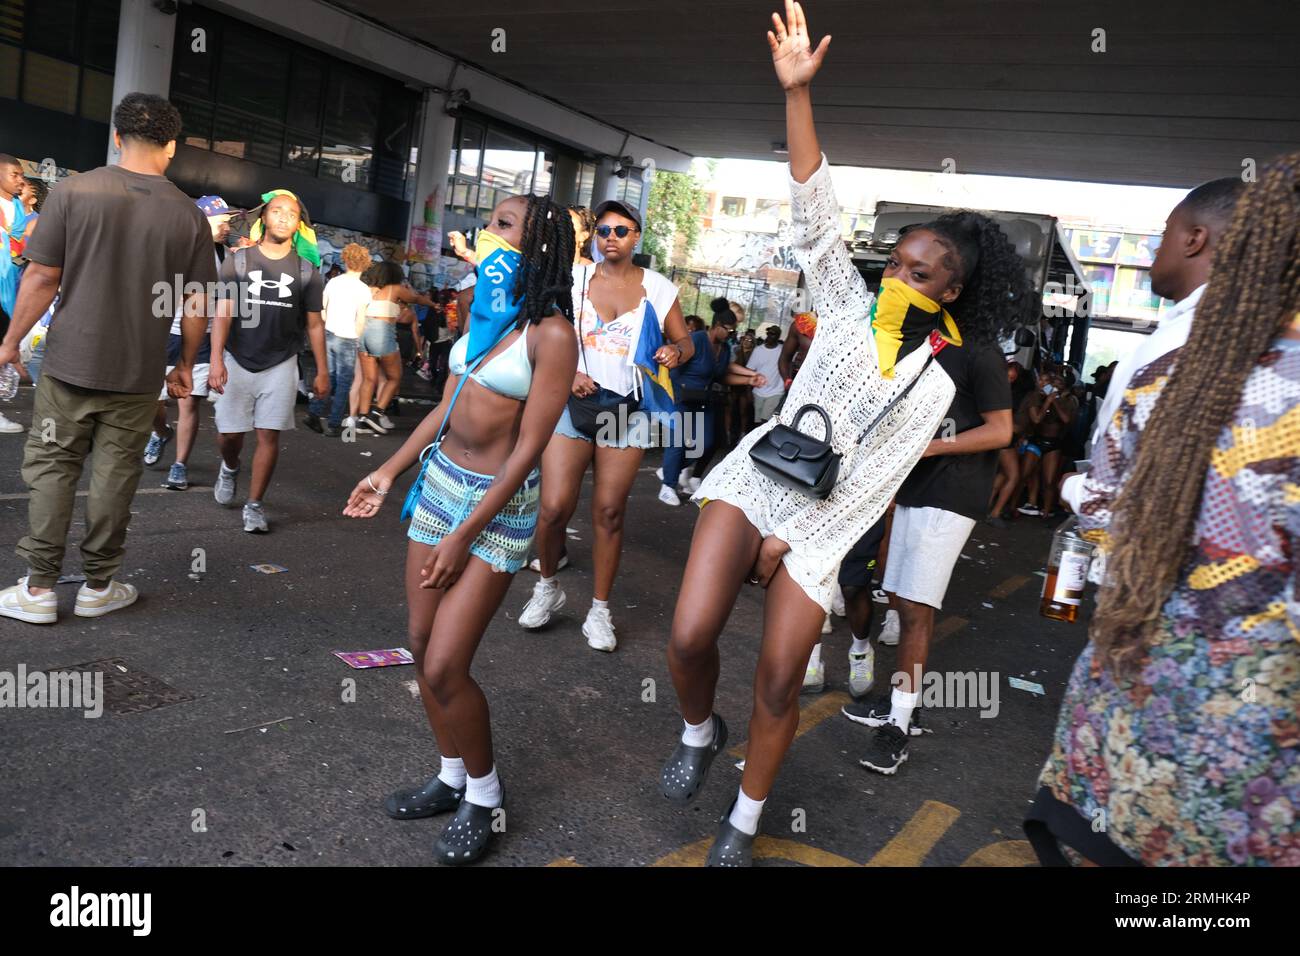 Mädchen, die Jamaika und St. Lucia Gesichtsmasken tragen, tanzen vor einem Musik-Truck während der Karnevalsfeier der Karibik. 28/08/20 Stockfoto